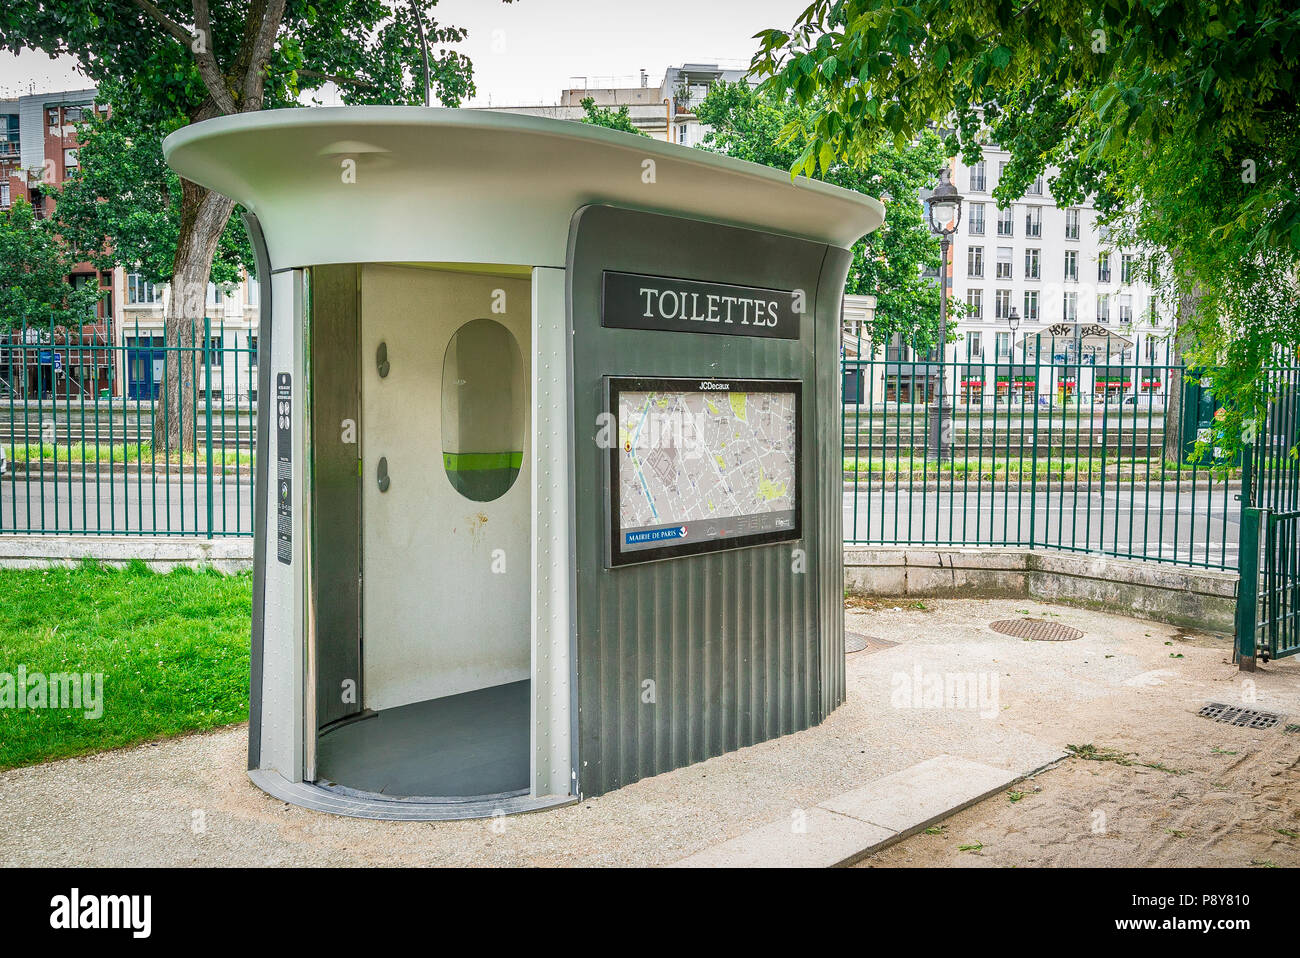 A public toilet in Paris, France. Stock Photo